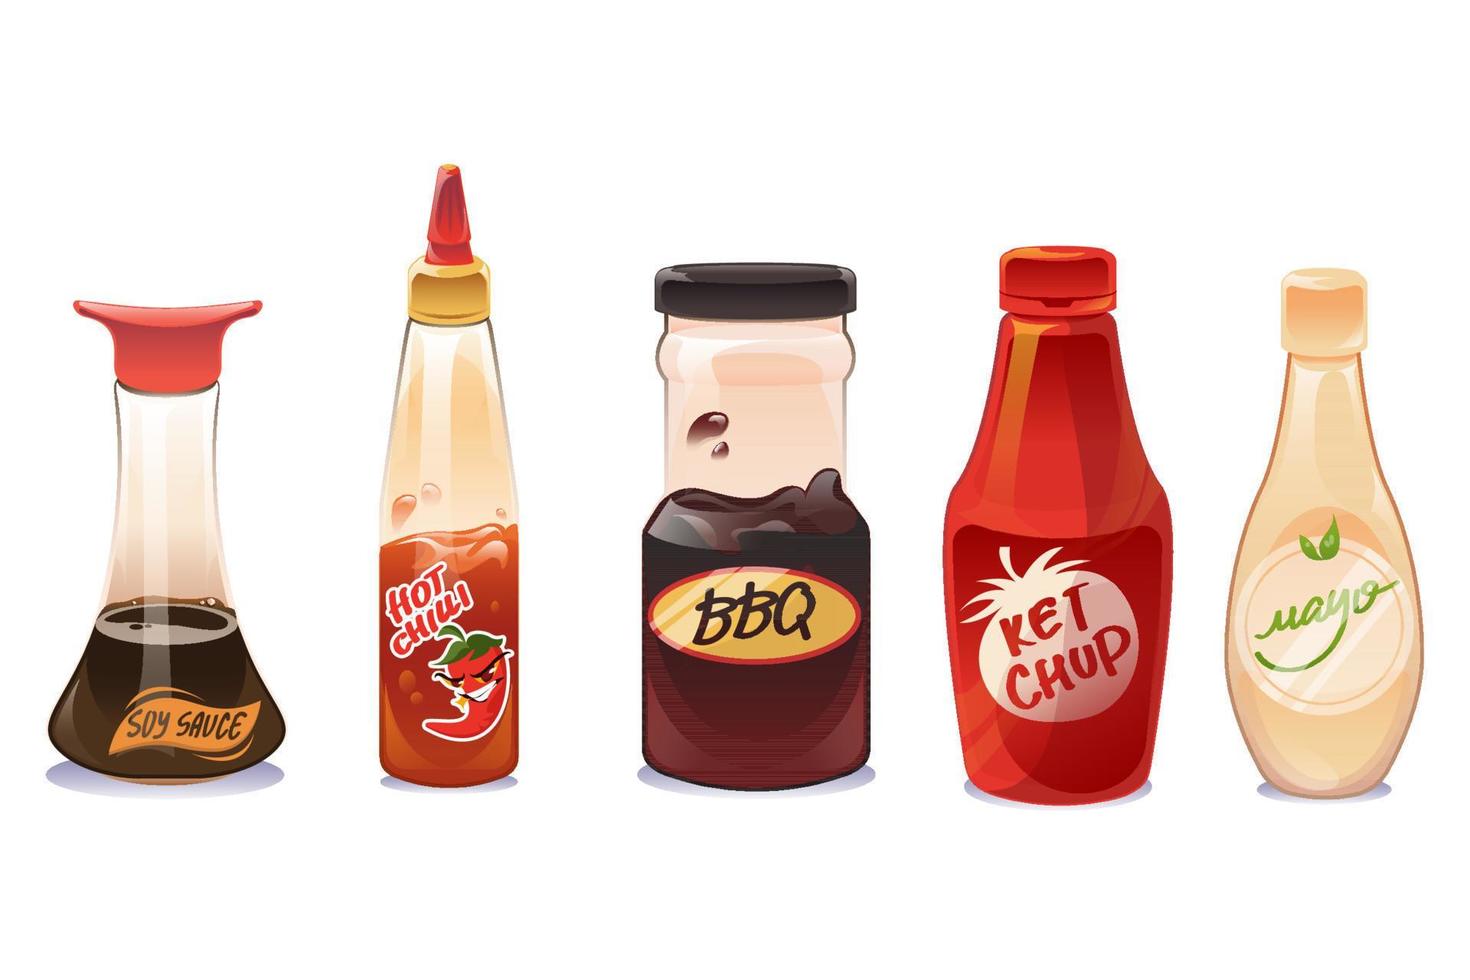 molho de soja, ketchup e maionese em garrafas vetor